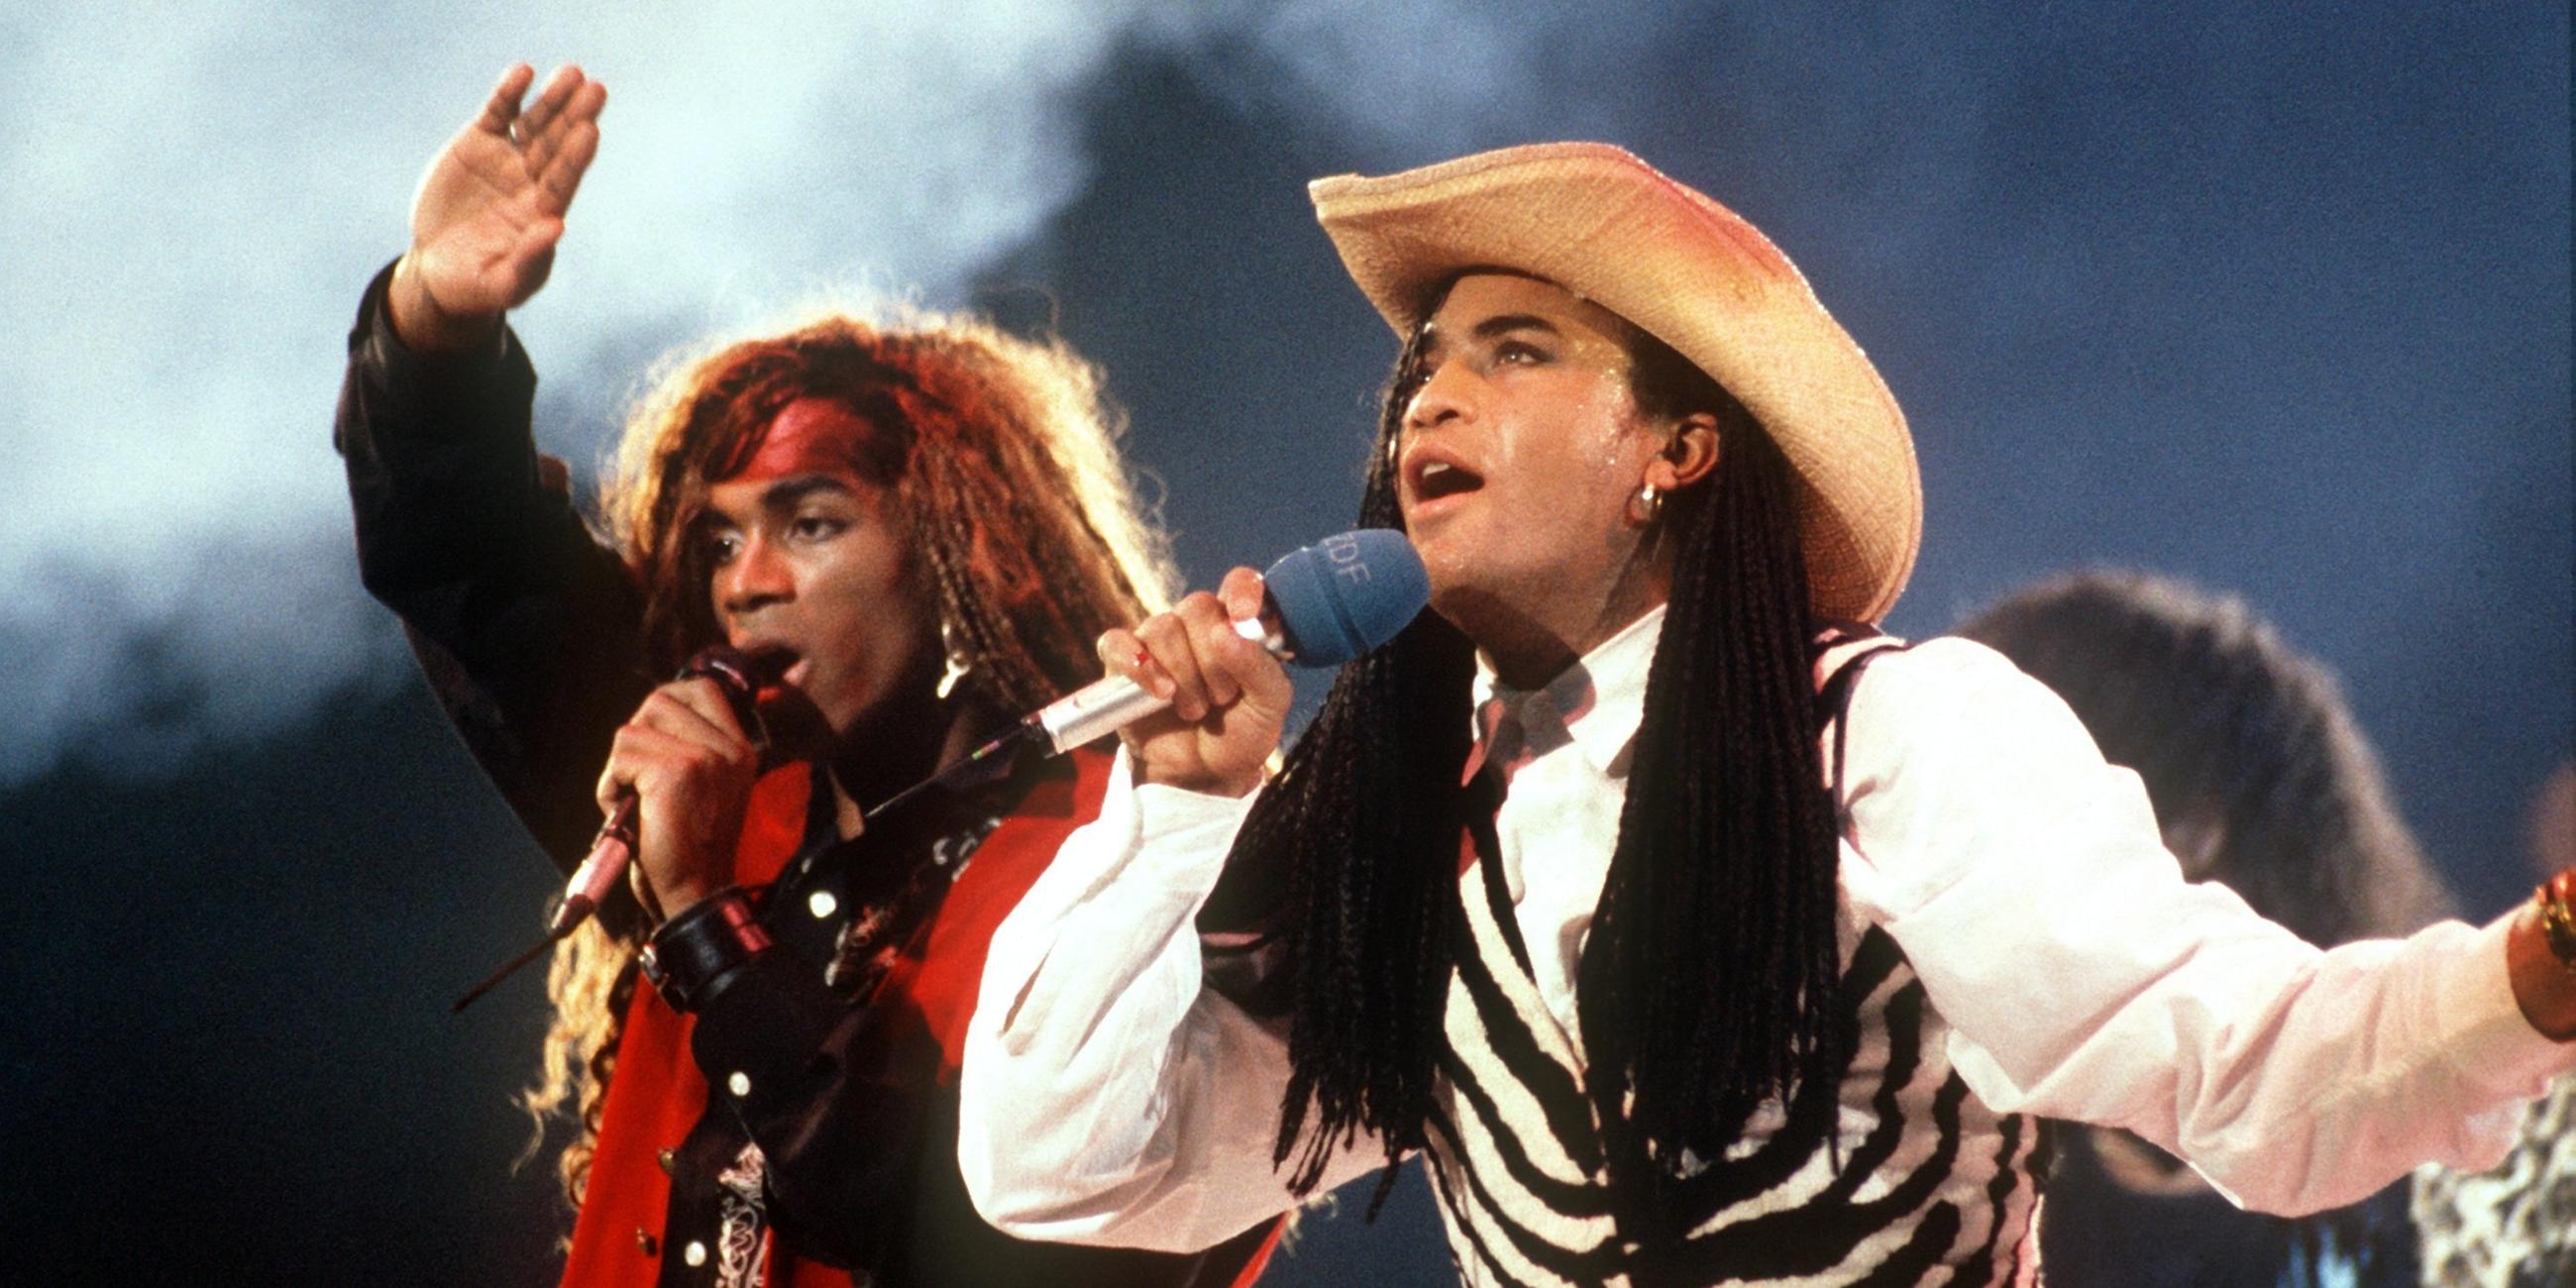 Das Pop-Duo «Milli Vanilli» mit Rob Pilatus (r) und Fabricio «Fab» Morvan bei einem Auftritt in der Musiksendung «Peter's Popshow» in Dortmund am 17.11.1989. 